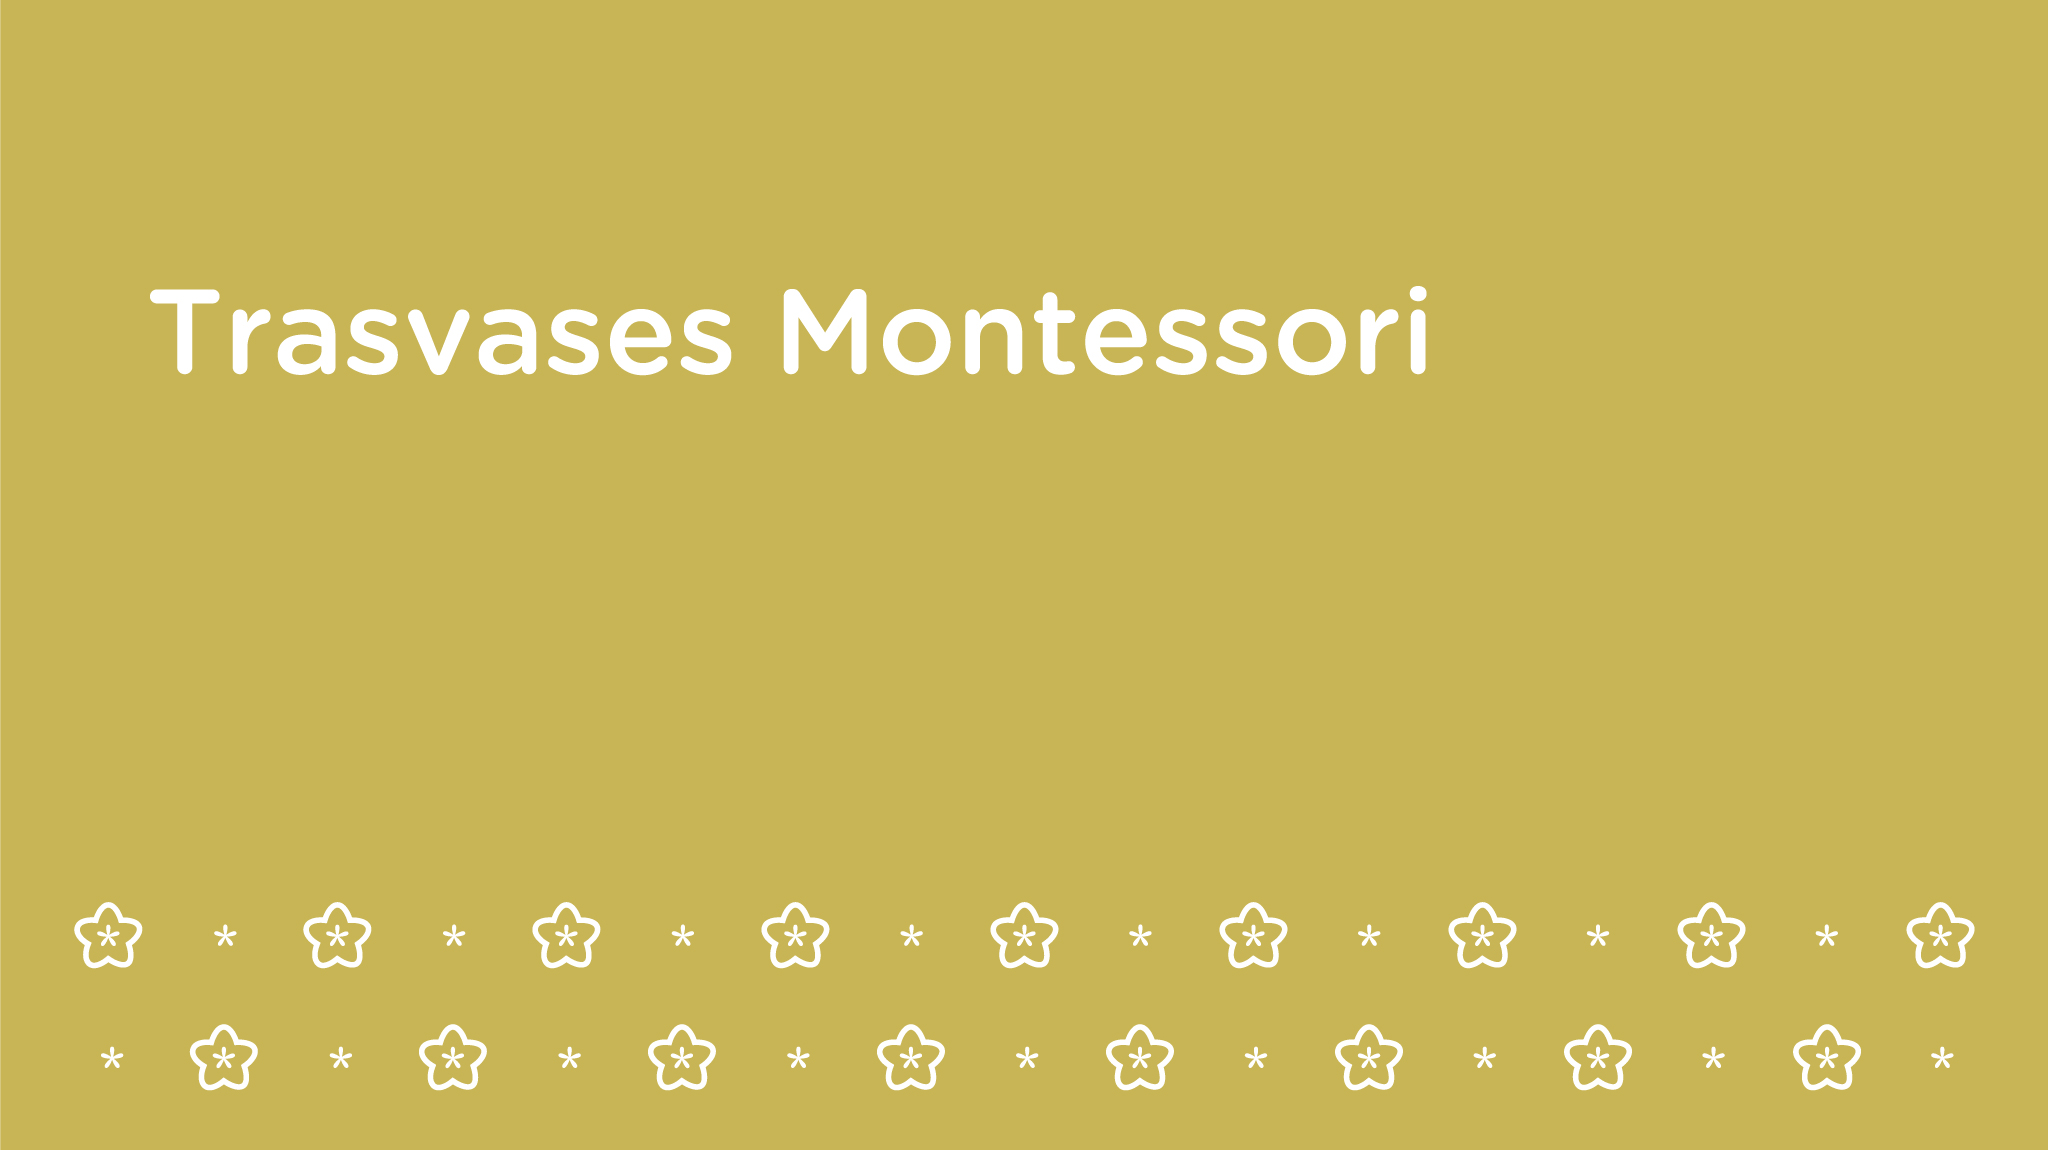 Trasvases Montessori